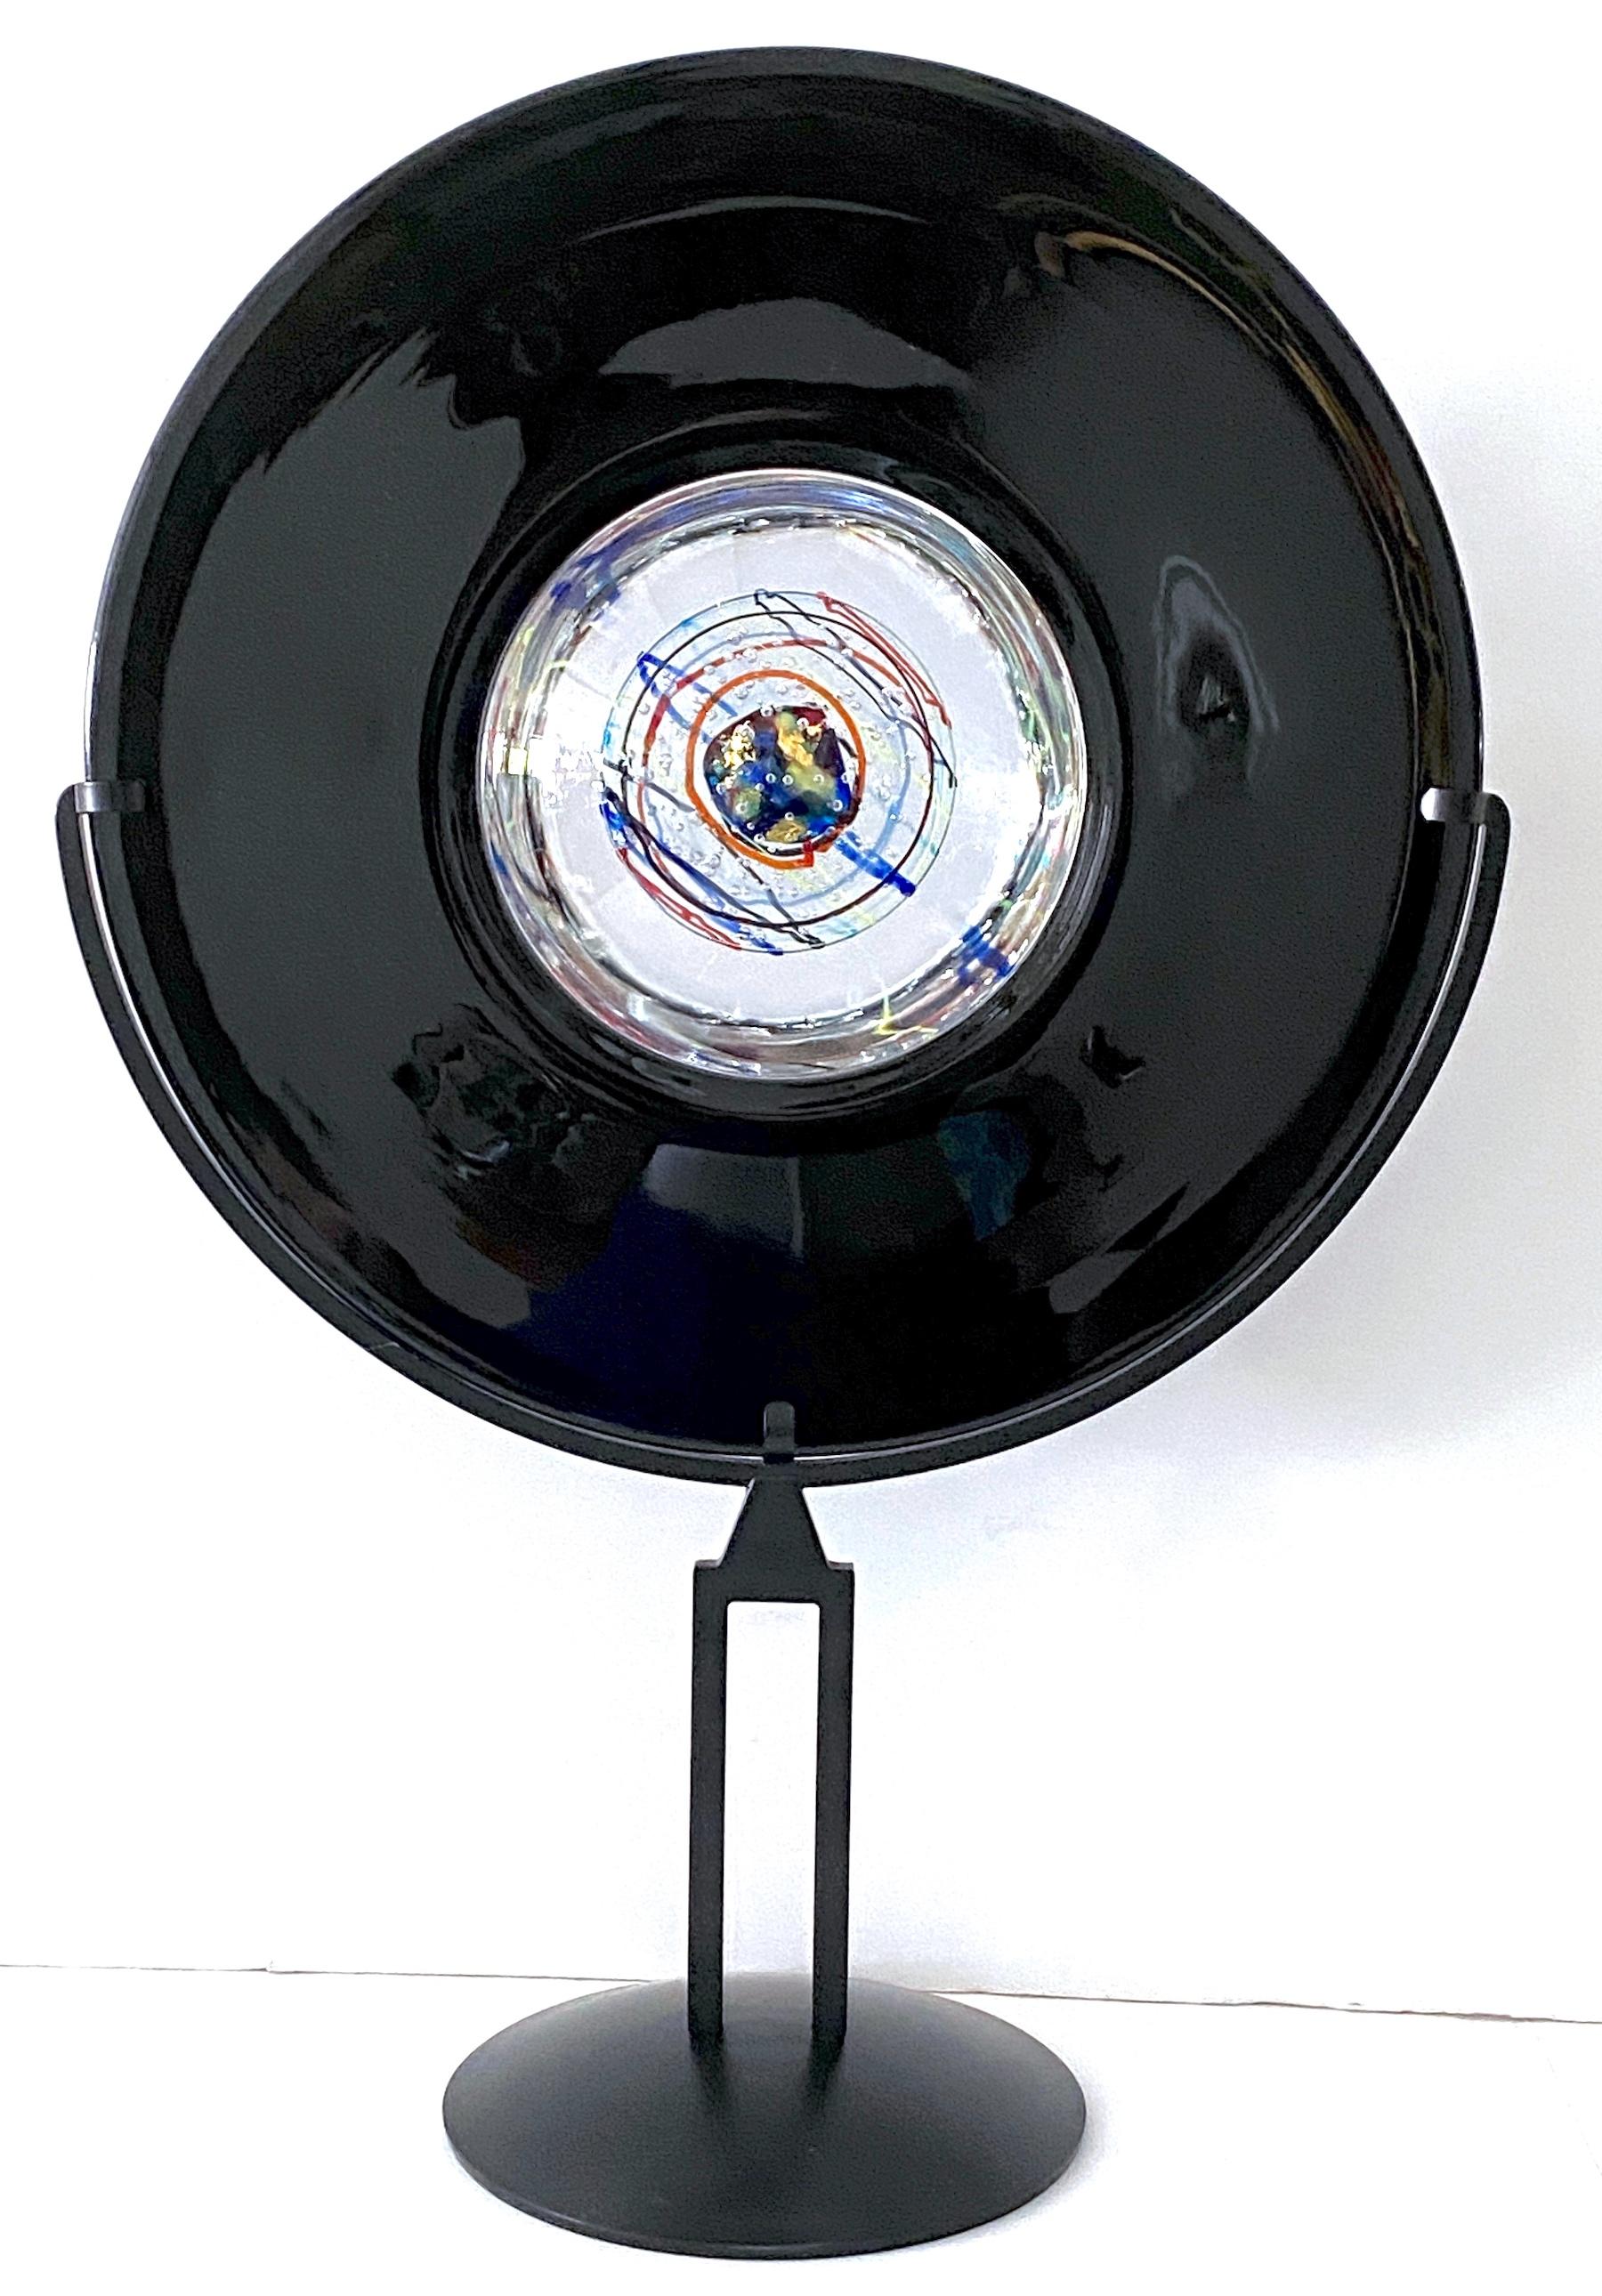 Elio Raffaeli + Robert Cammozzo Murano Glass Orb Sculpture 'Cosmic Explosion' 
For Oggetti
Italy, circa 1980s

The Elio Raffaeli + Robert Cammozzo Murano Glass Orb Sculpture, titled 'Cosmic Explosion,' is a remarkable and rare piece of art. Created